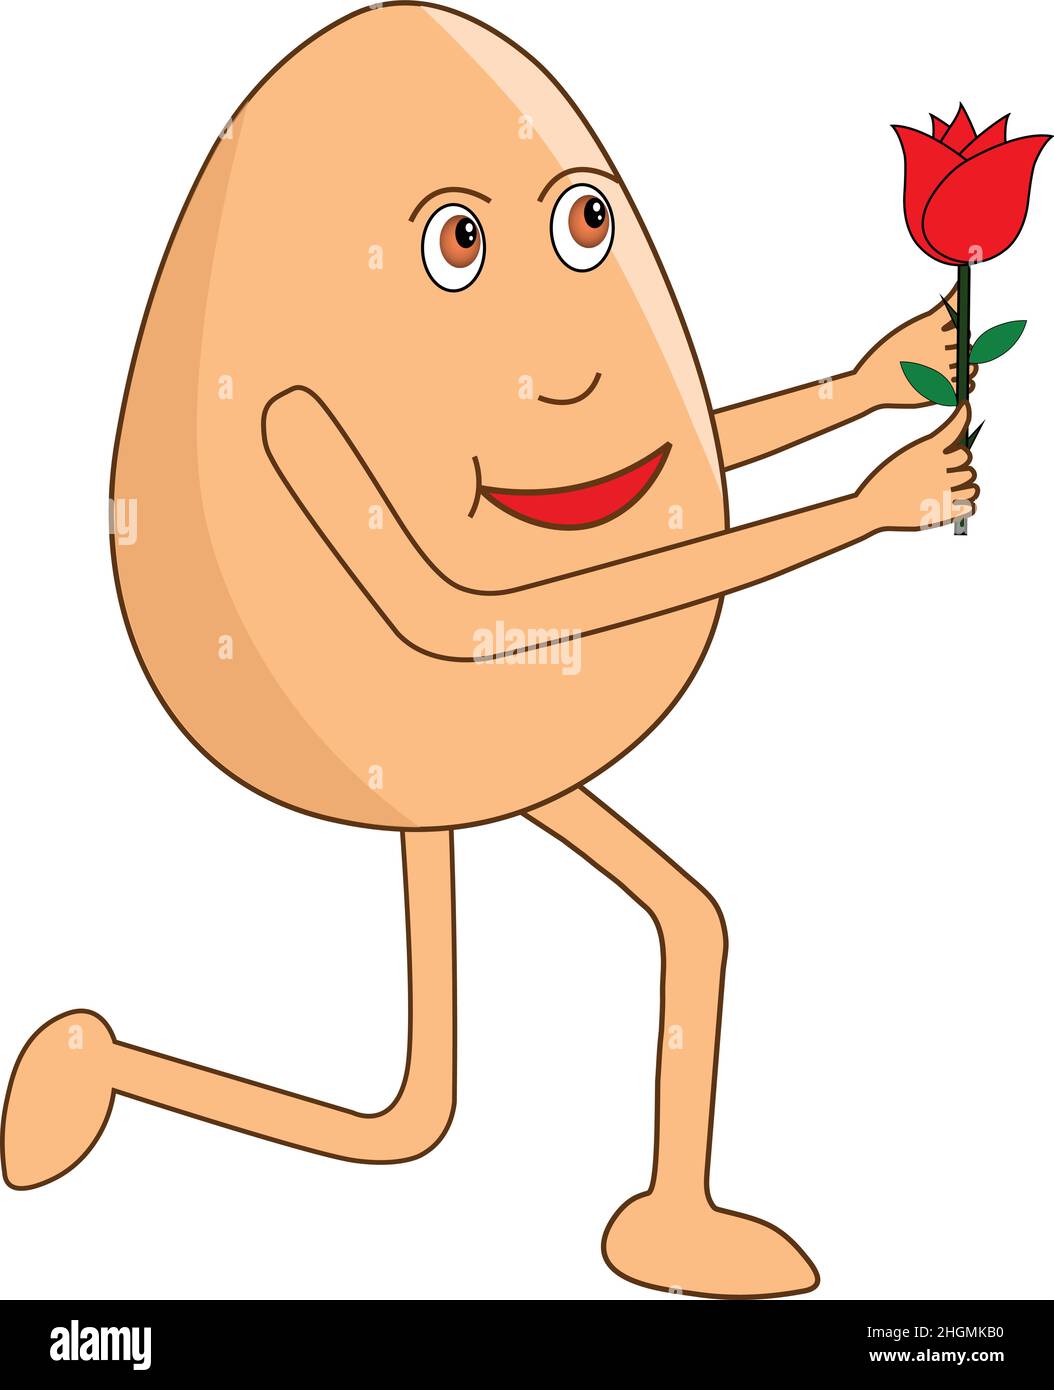 Romantischer Eierkarton, der auf dem Knie steht und am Rosentag Rose gibt. Vektorgrafik. Stock Vektor